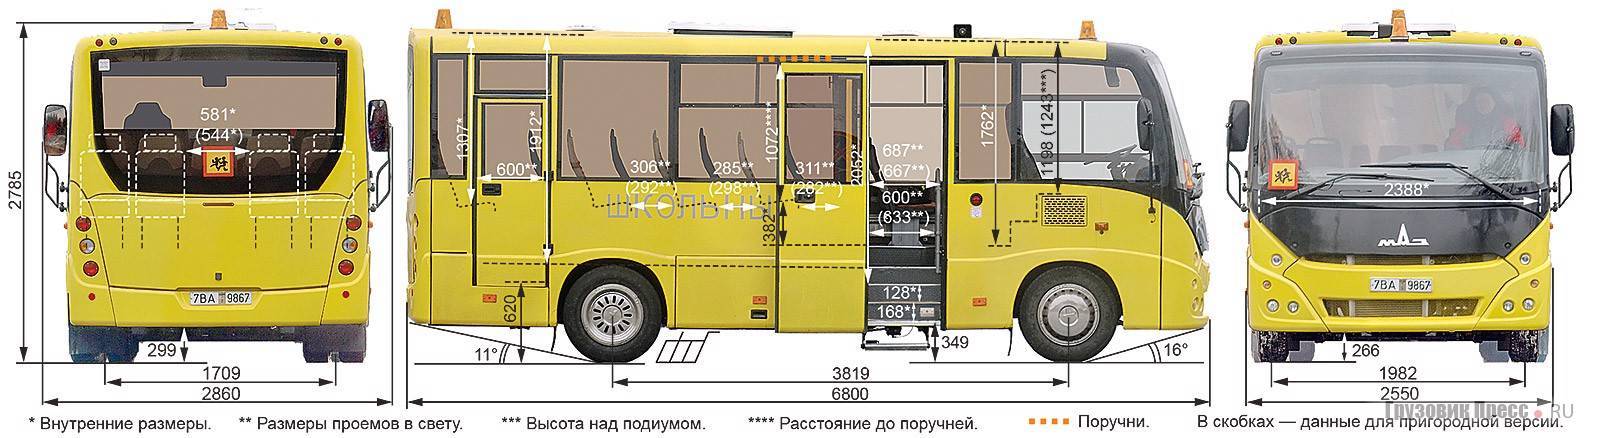 Автобус маз-107: описание модели, технические характеристики – ооо «маз-рус»